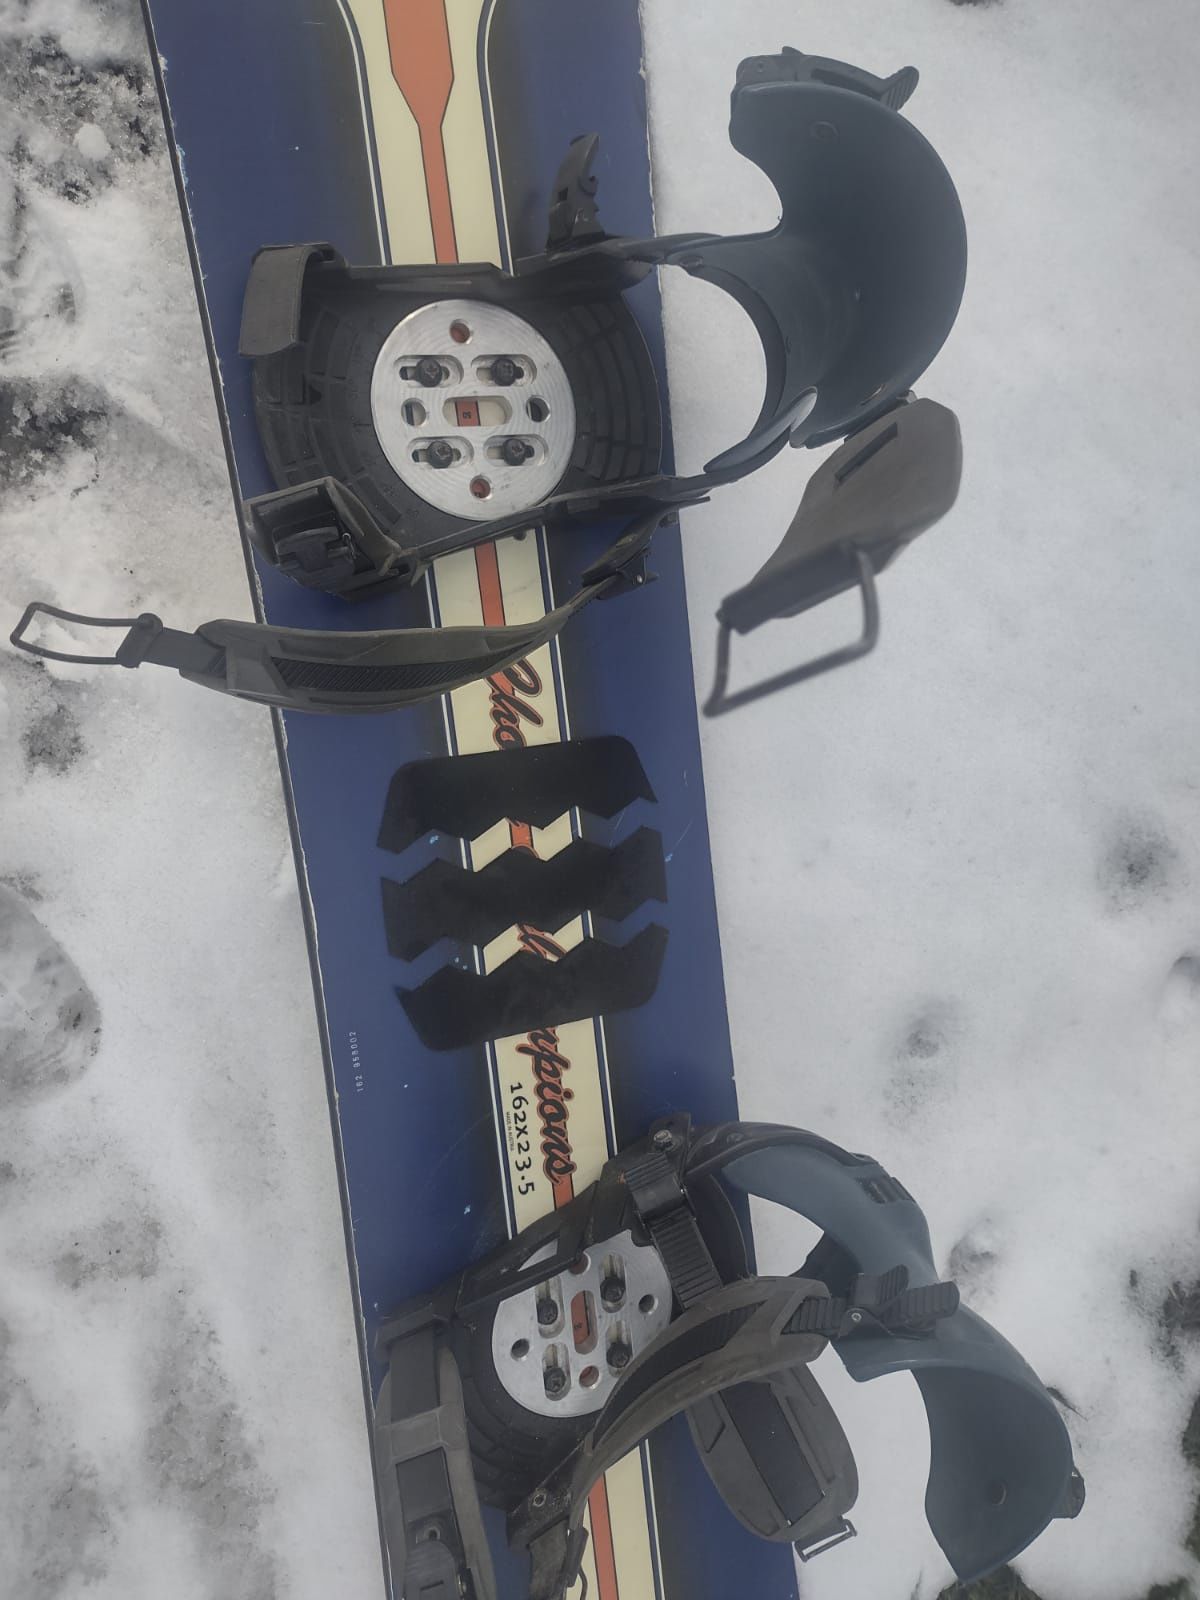 Deska snowboardowa z wiązaniami Mad 163 cm